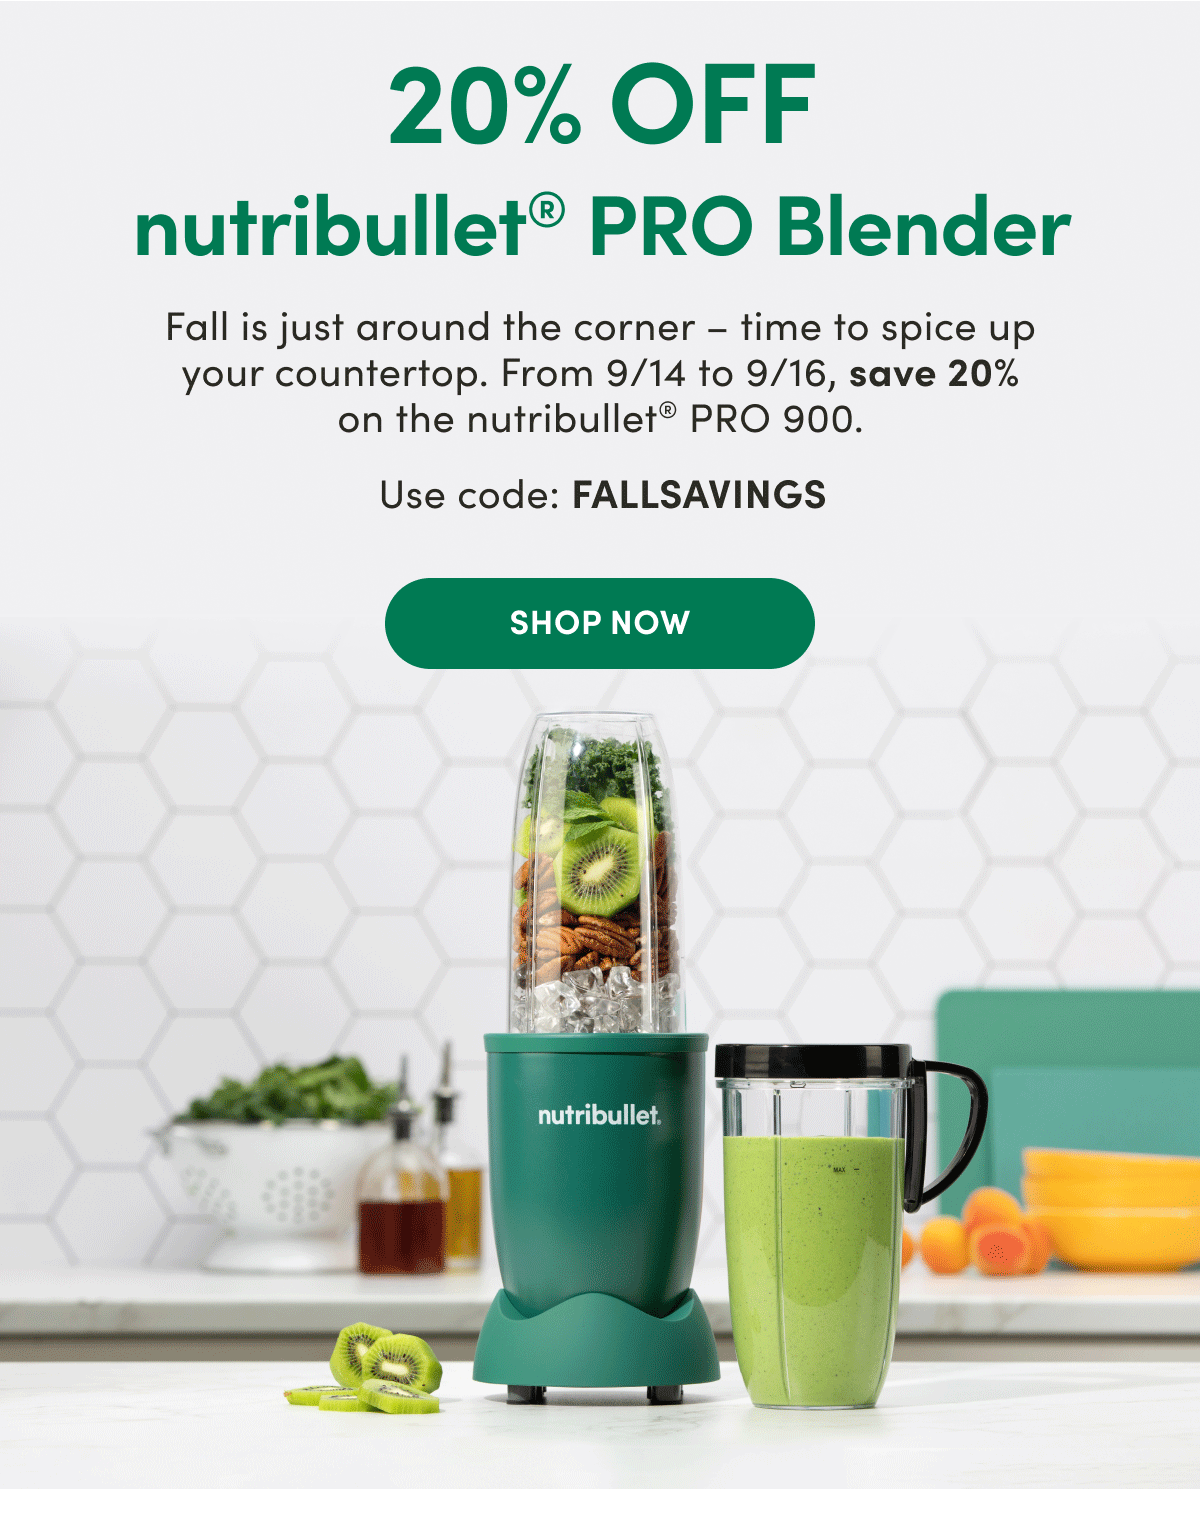 NutriBullet blenders: Save 20% on blenders and juicers at this sale